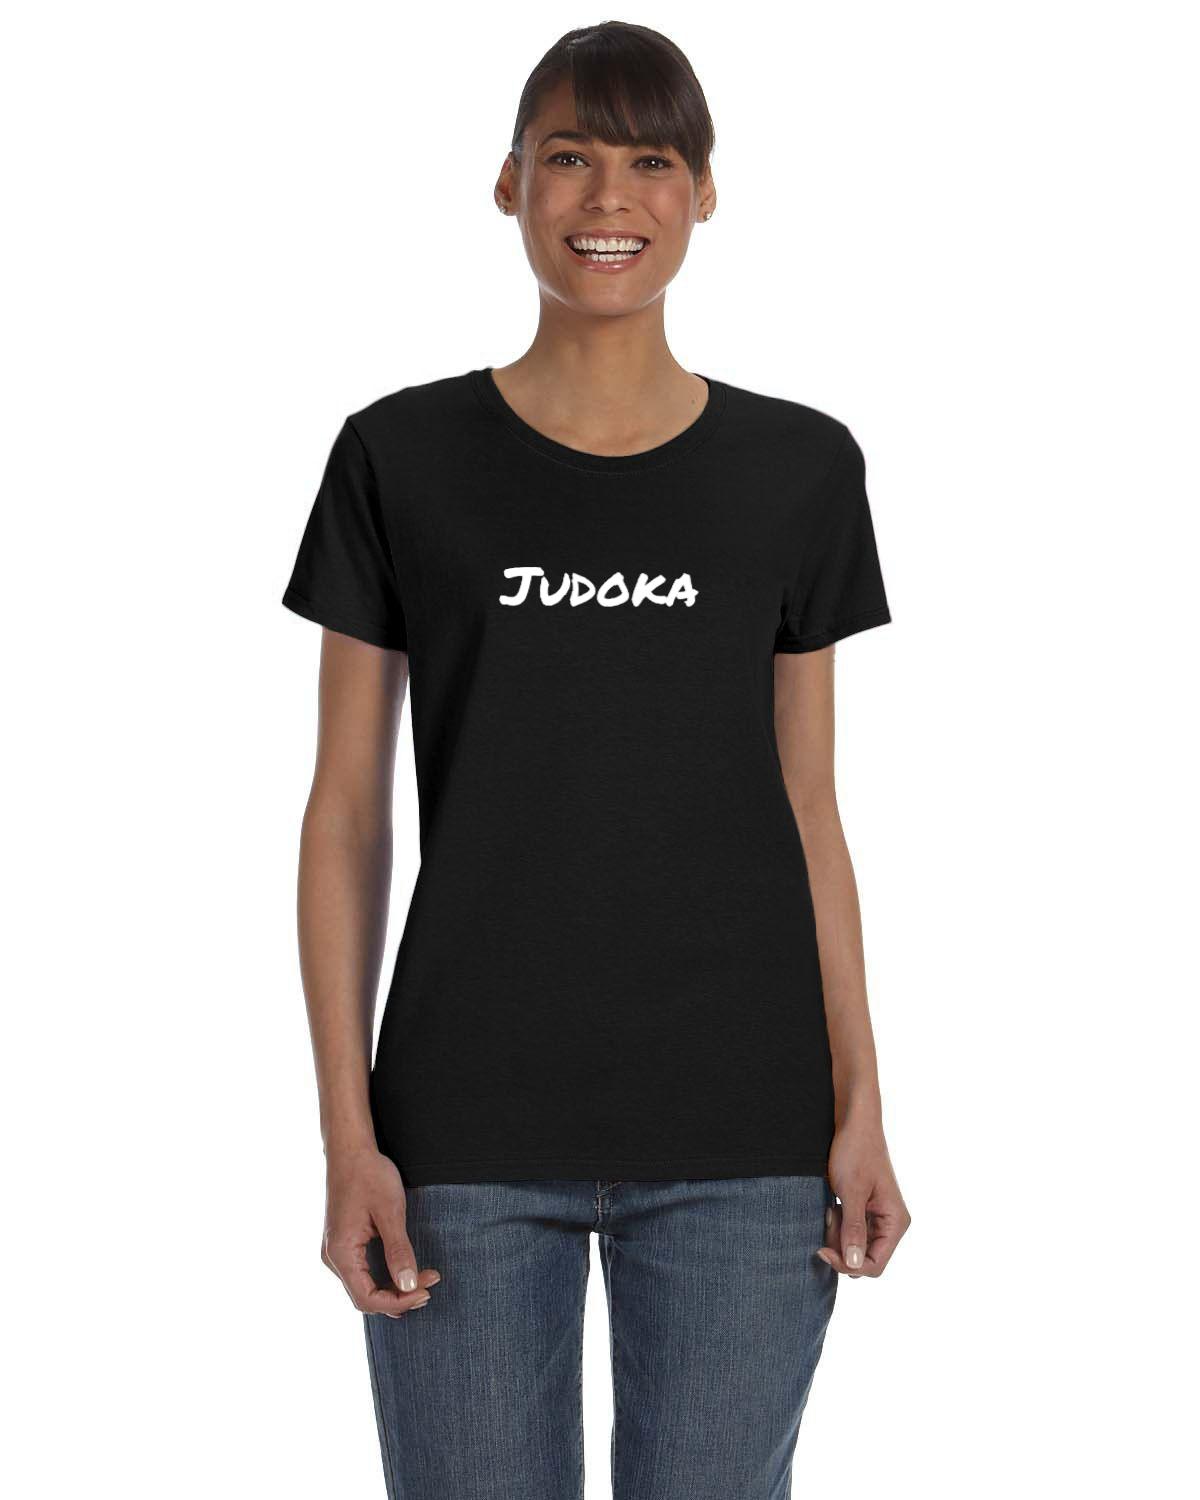 Judoka Womens T-Shirt